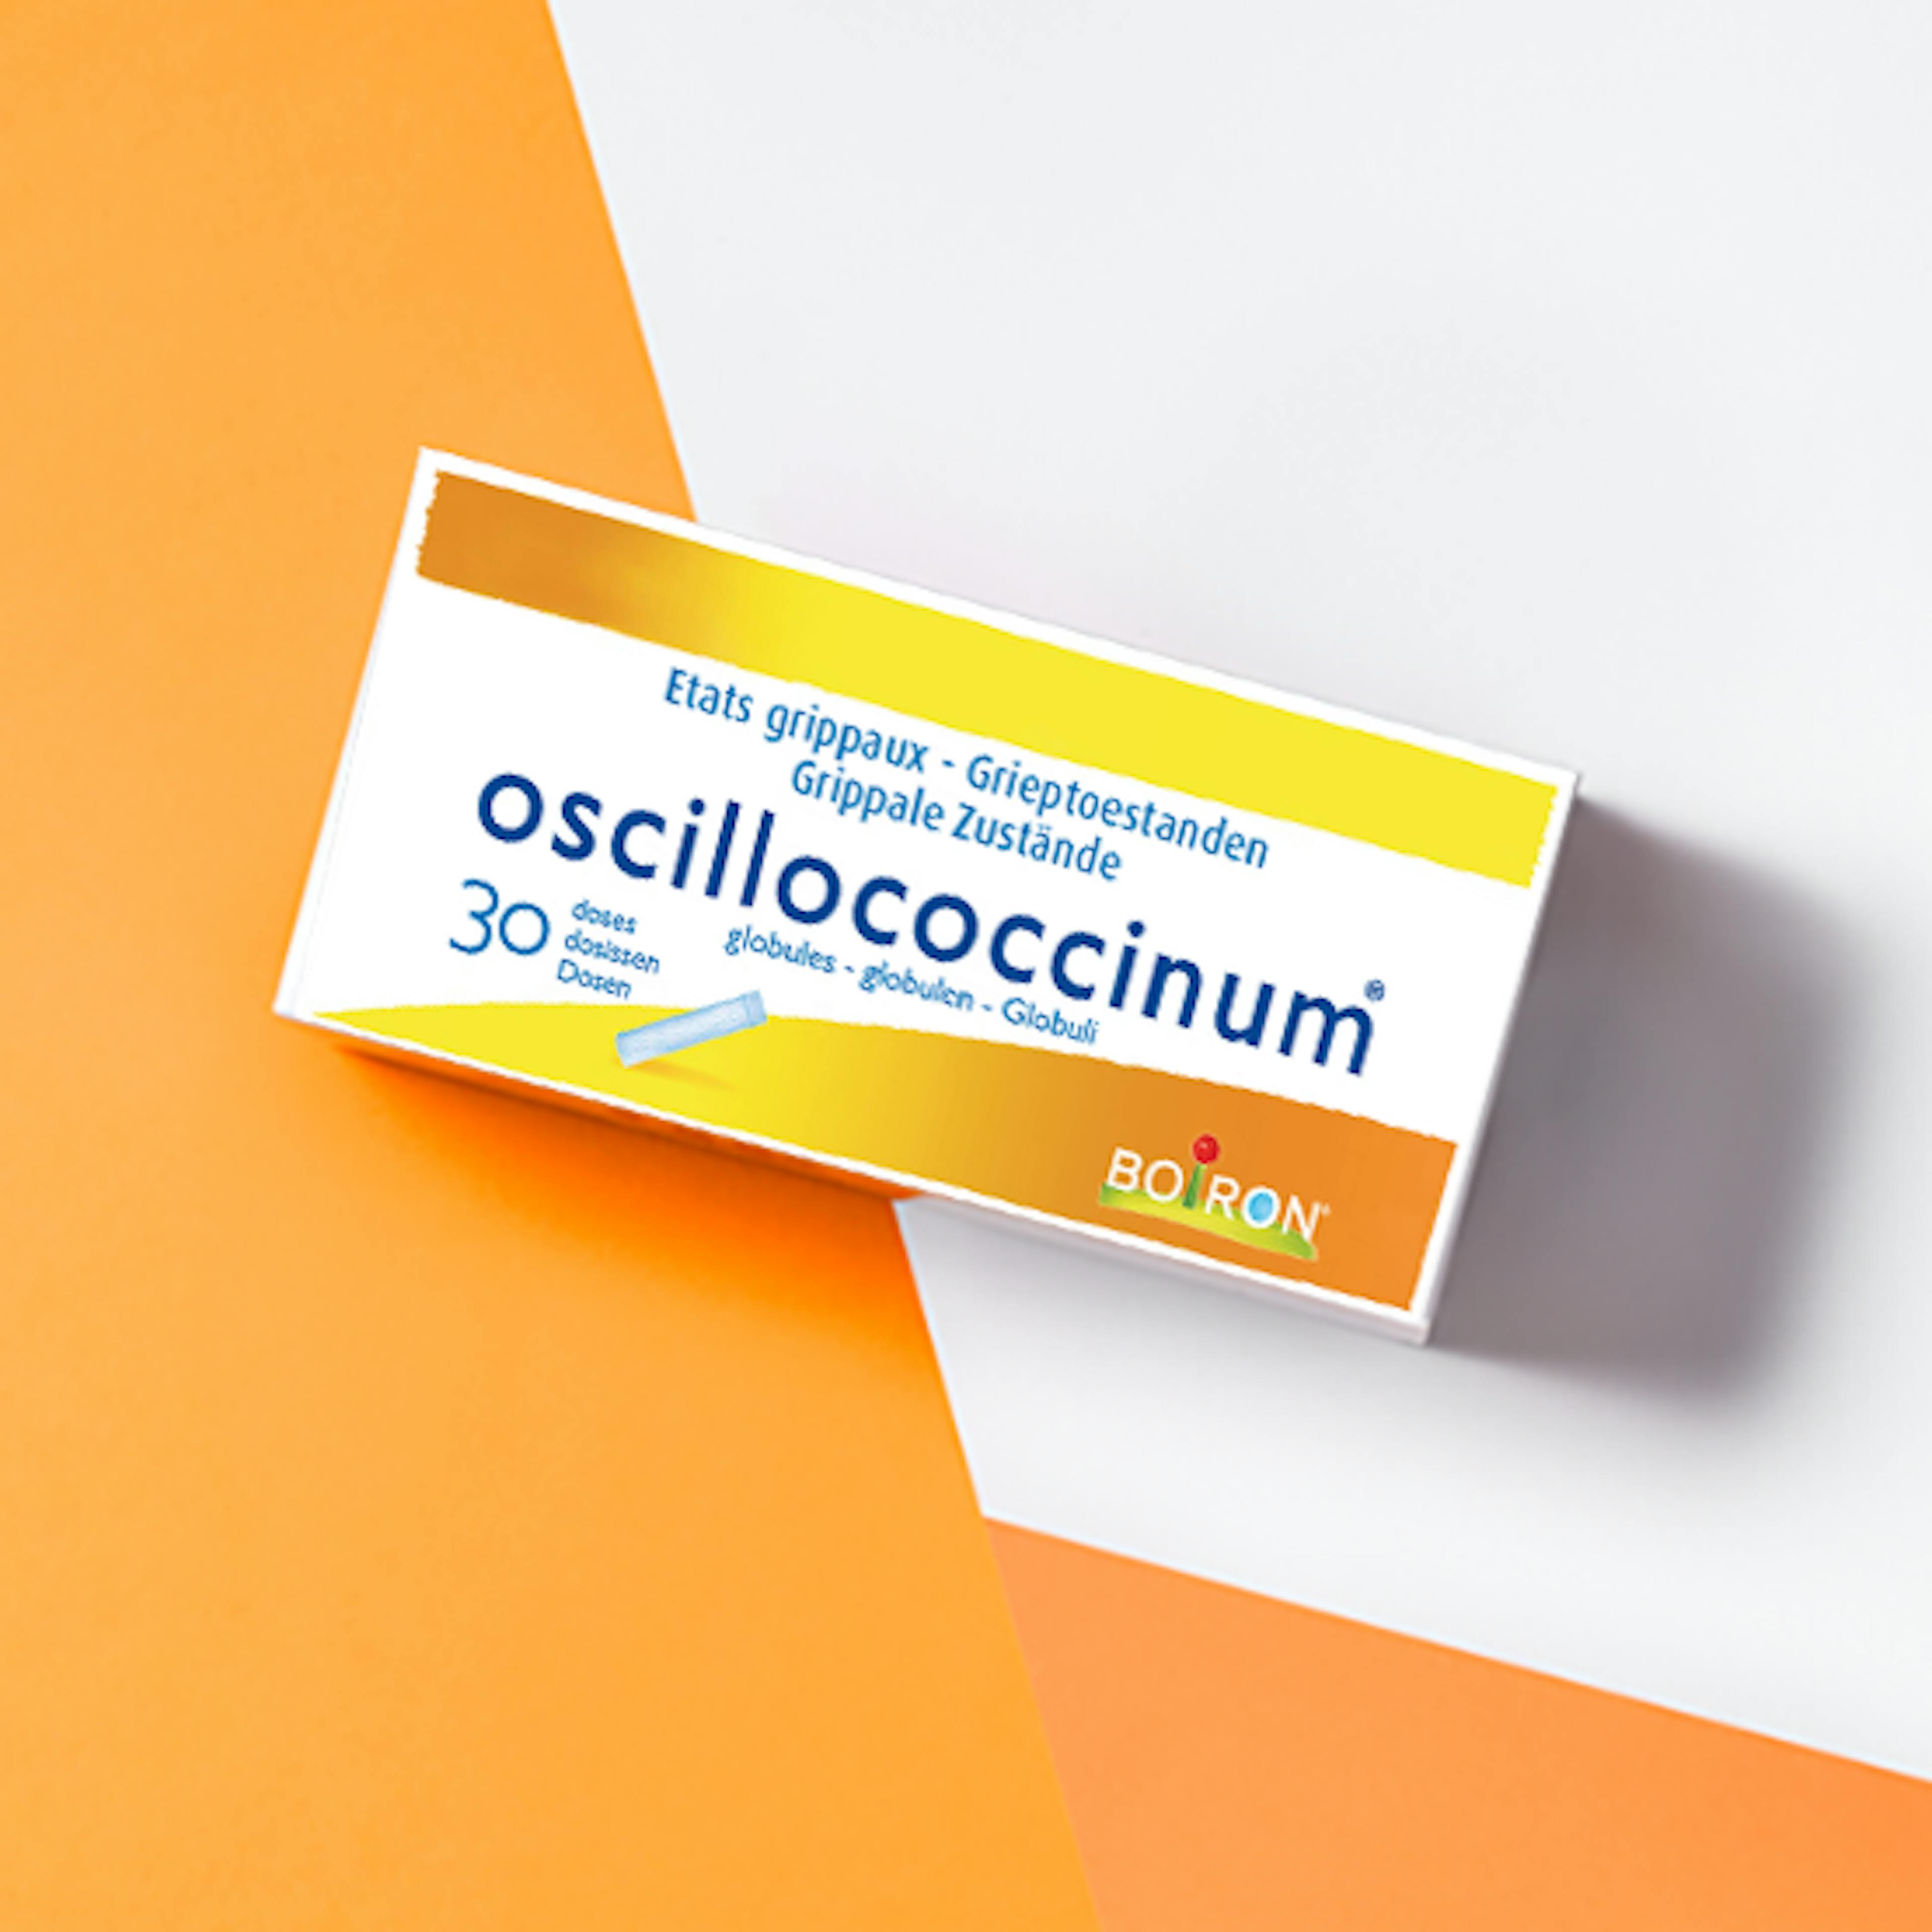 oscillococcinum - onze homeopathische geneesmiddelen specialiteiten - Rillingen - Spierpijn - Koorts